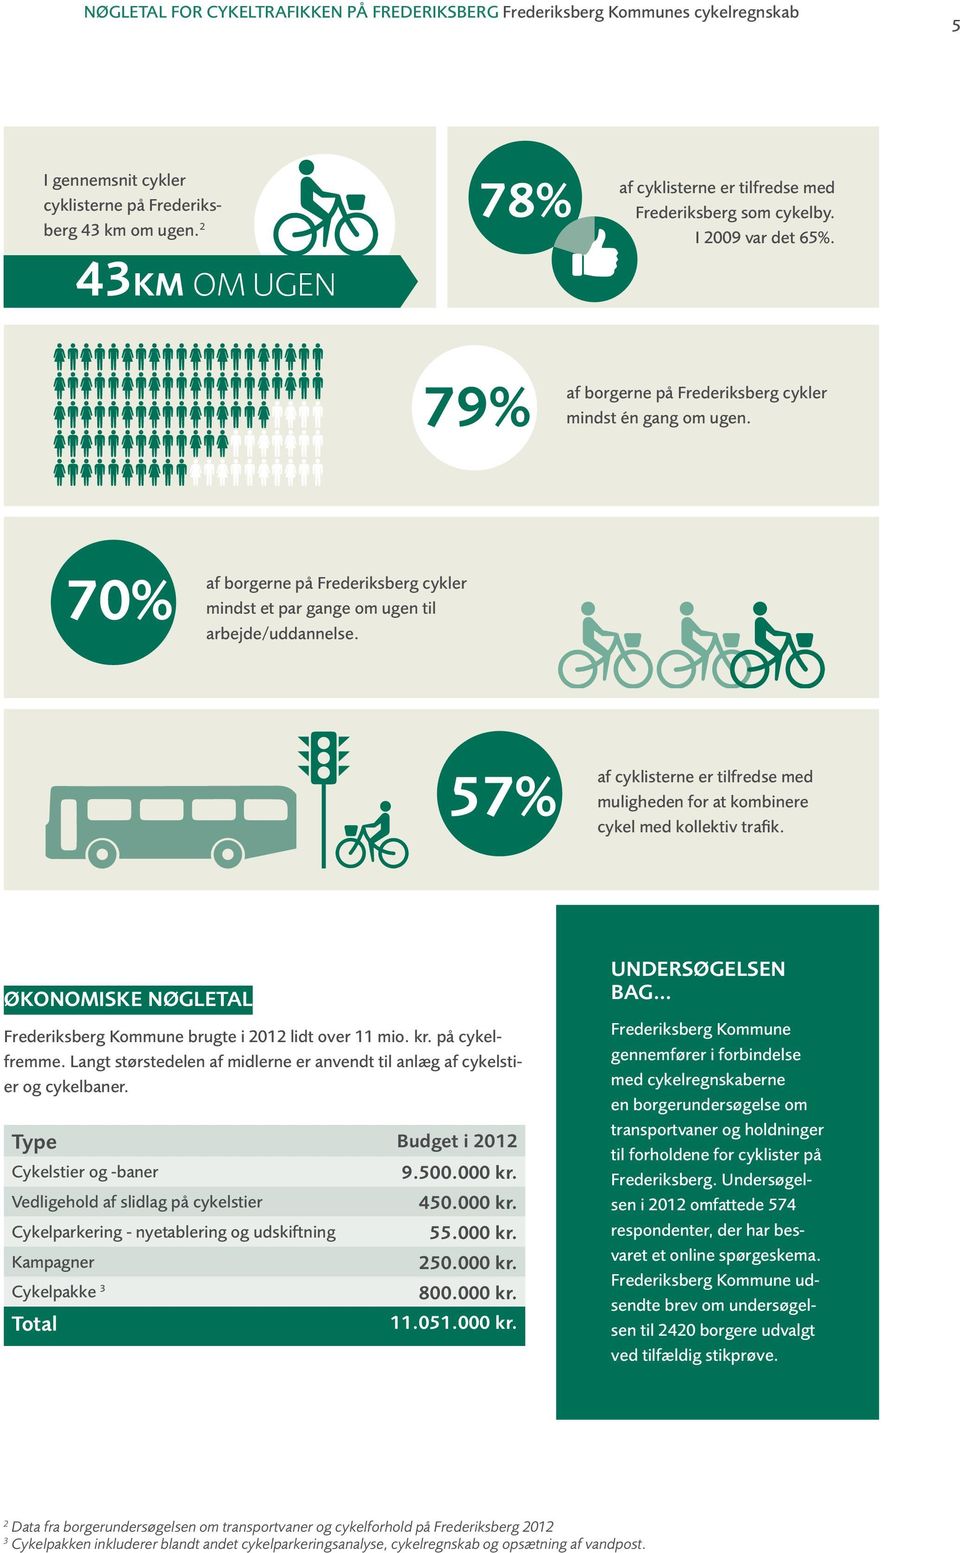 70% af borgerne på Frederiksberg cykler mindst et par gange om ugen til arbejde/uddannelse. 57% af cyklisterne er tilfredse med muligheden for at kombinere cykel med kollektiv trafik.